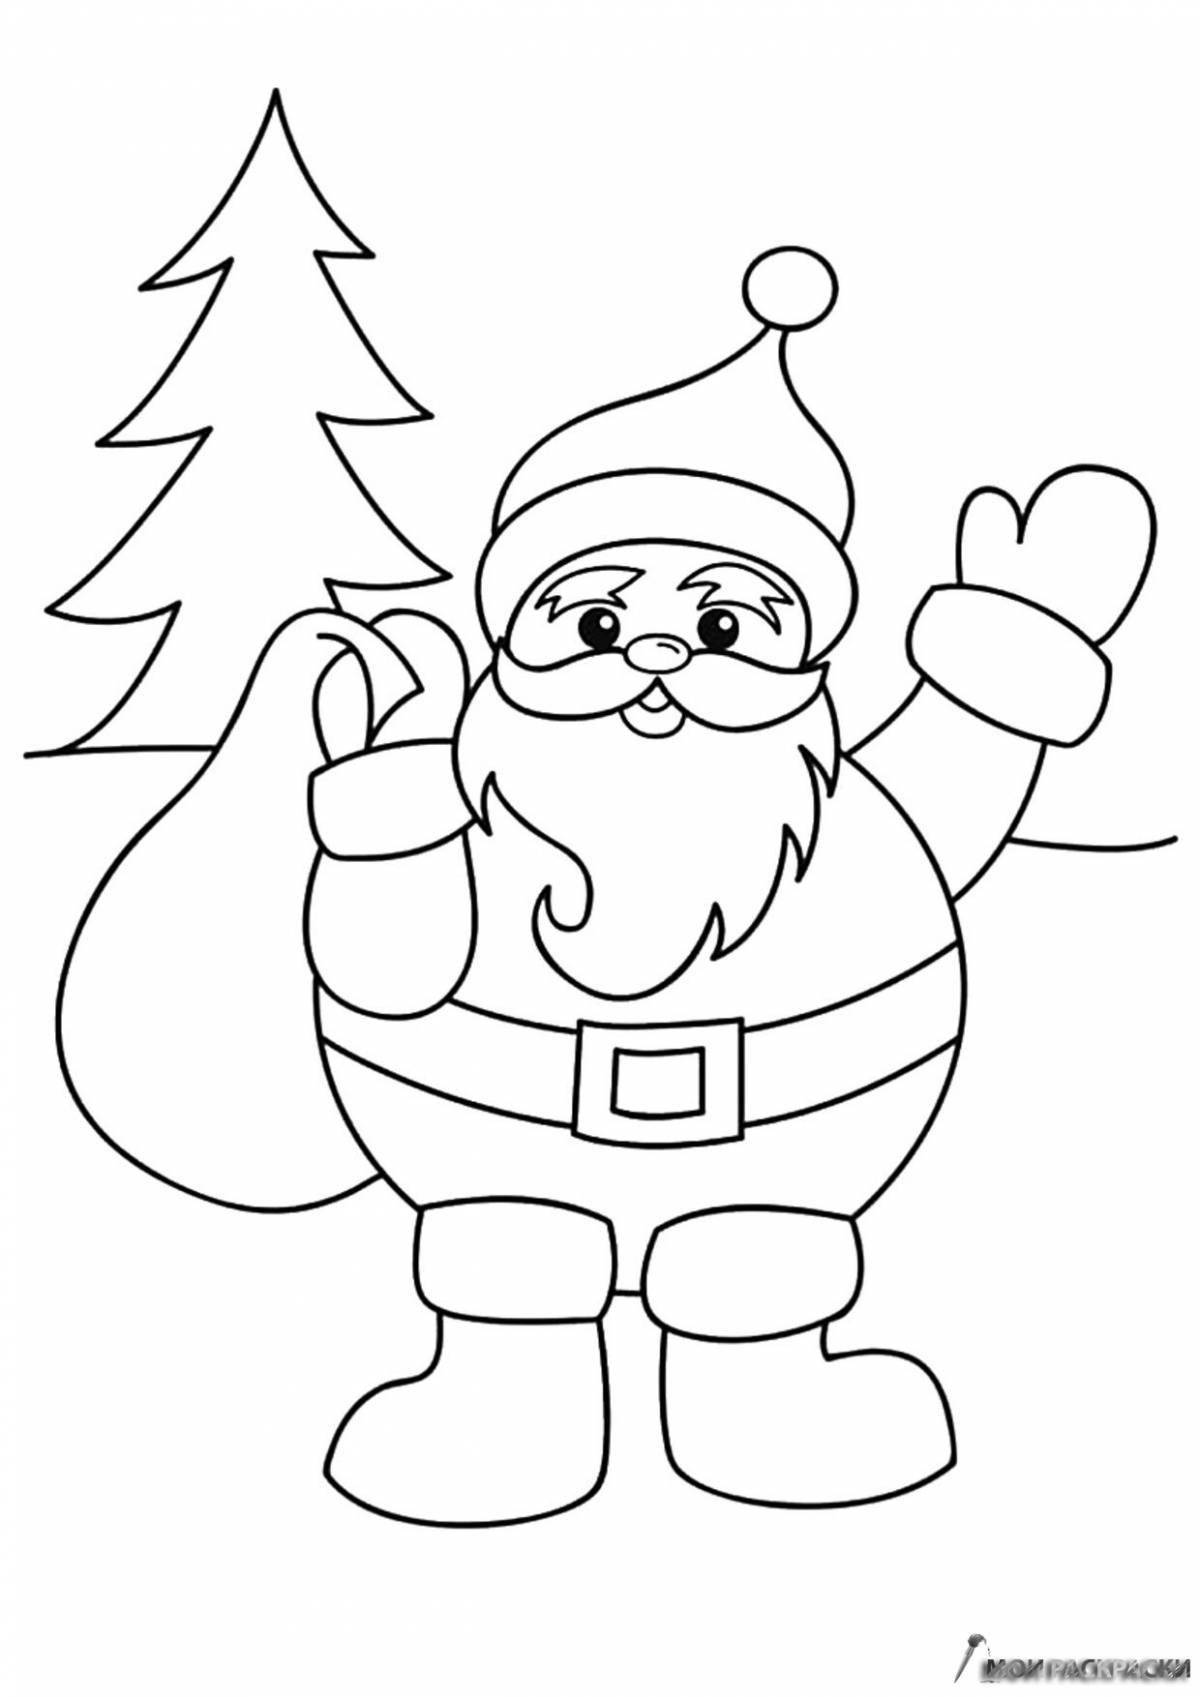 Coloring page holiday santa claus